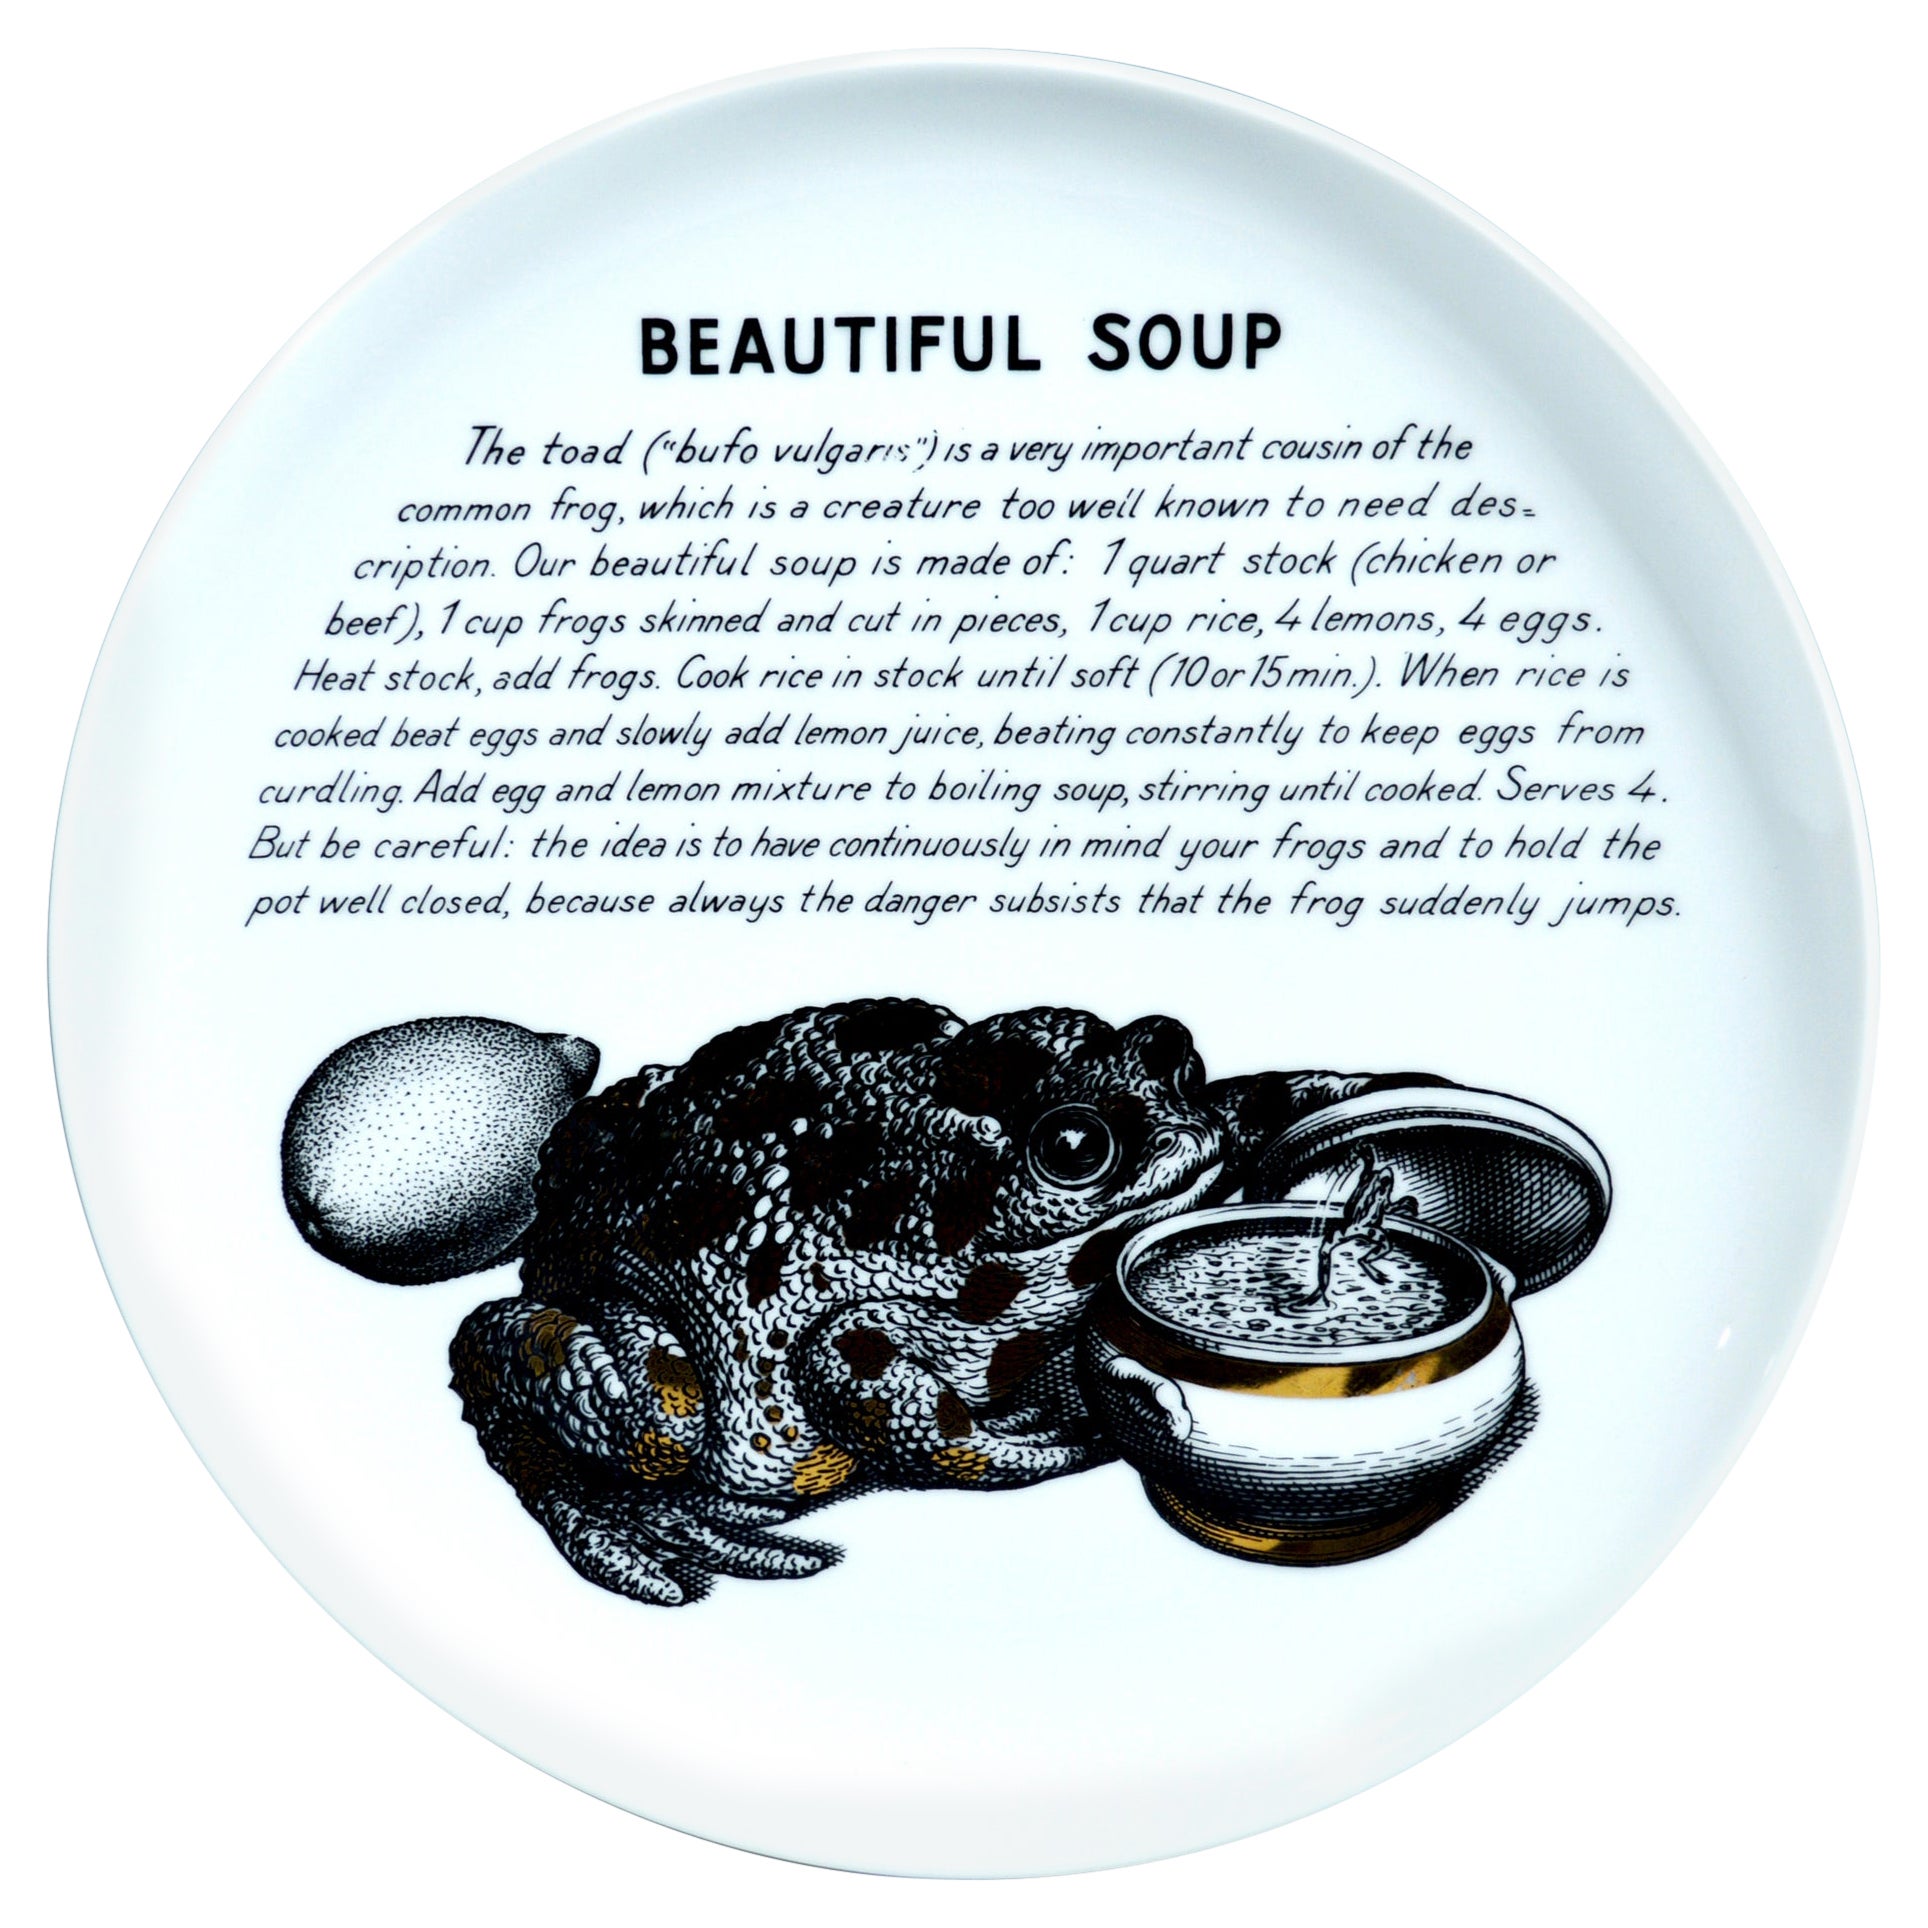 Assiette à recette en porcelaine Piero Fornasetti, belle soupe, réalisée pour Fleming Joffe